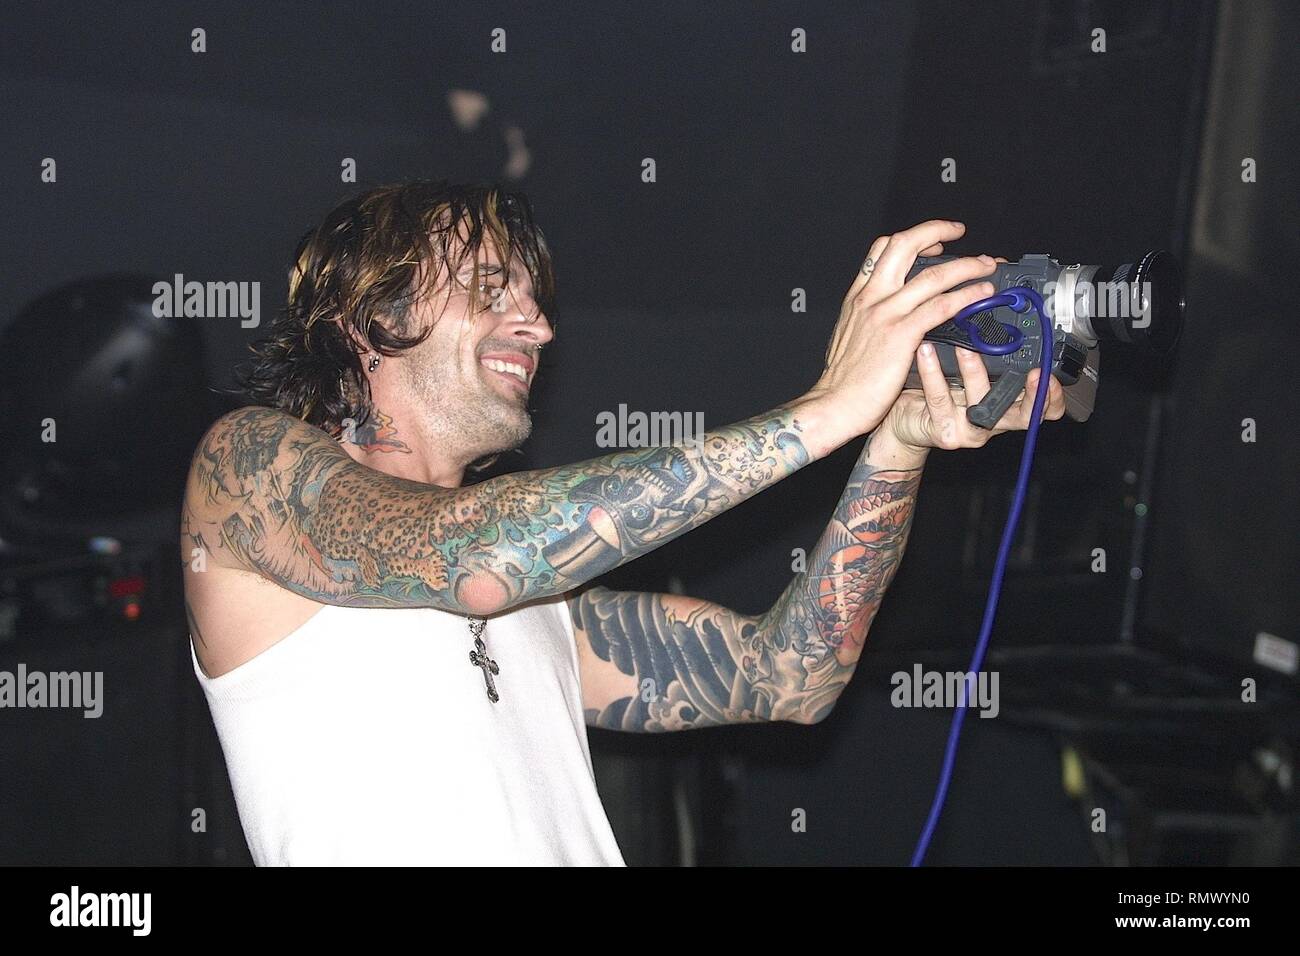 Musicien Tommy Lee, membre fondateur et batteur du groupe de heavy metal  Mötley Crüe, est montré sur scène lors d'un concert avec son projet solo  Photo Stock - Alamy